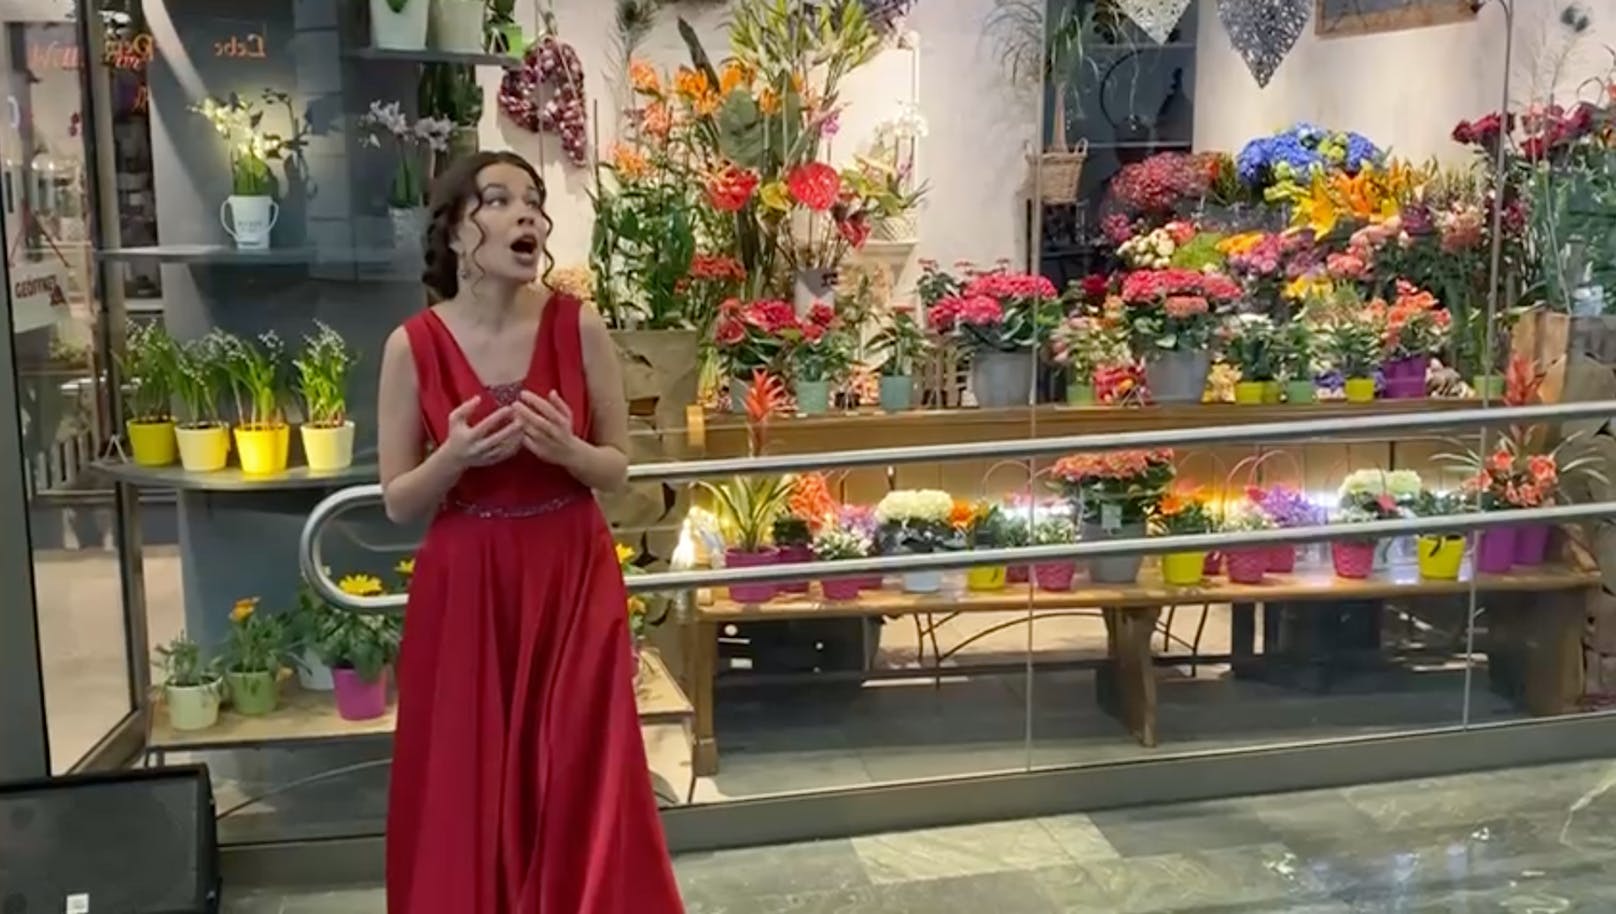 Sängerin Ksenia Skorokhodova bringt singend Blumen.